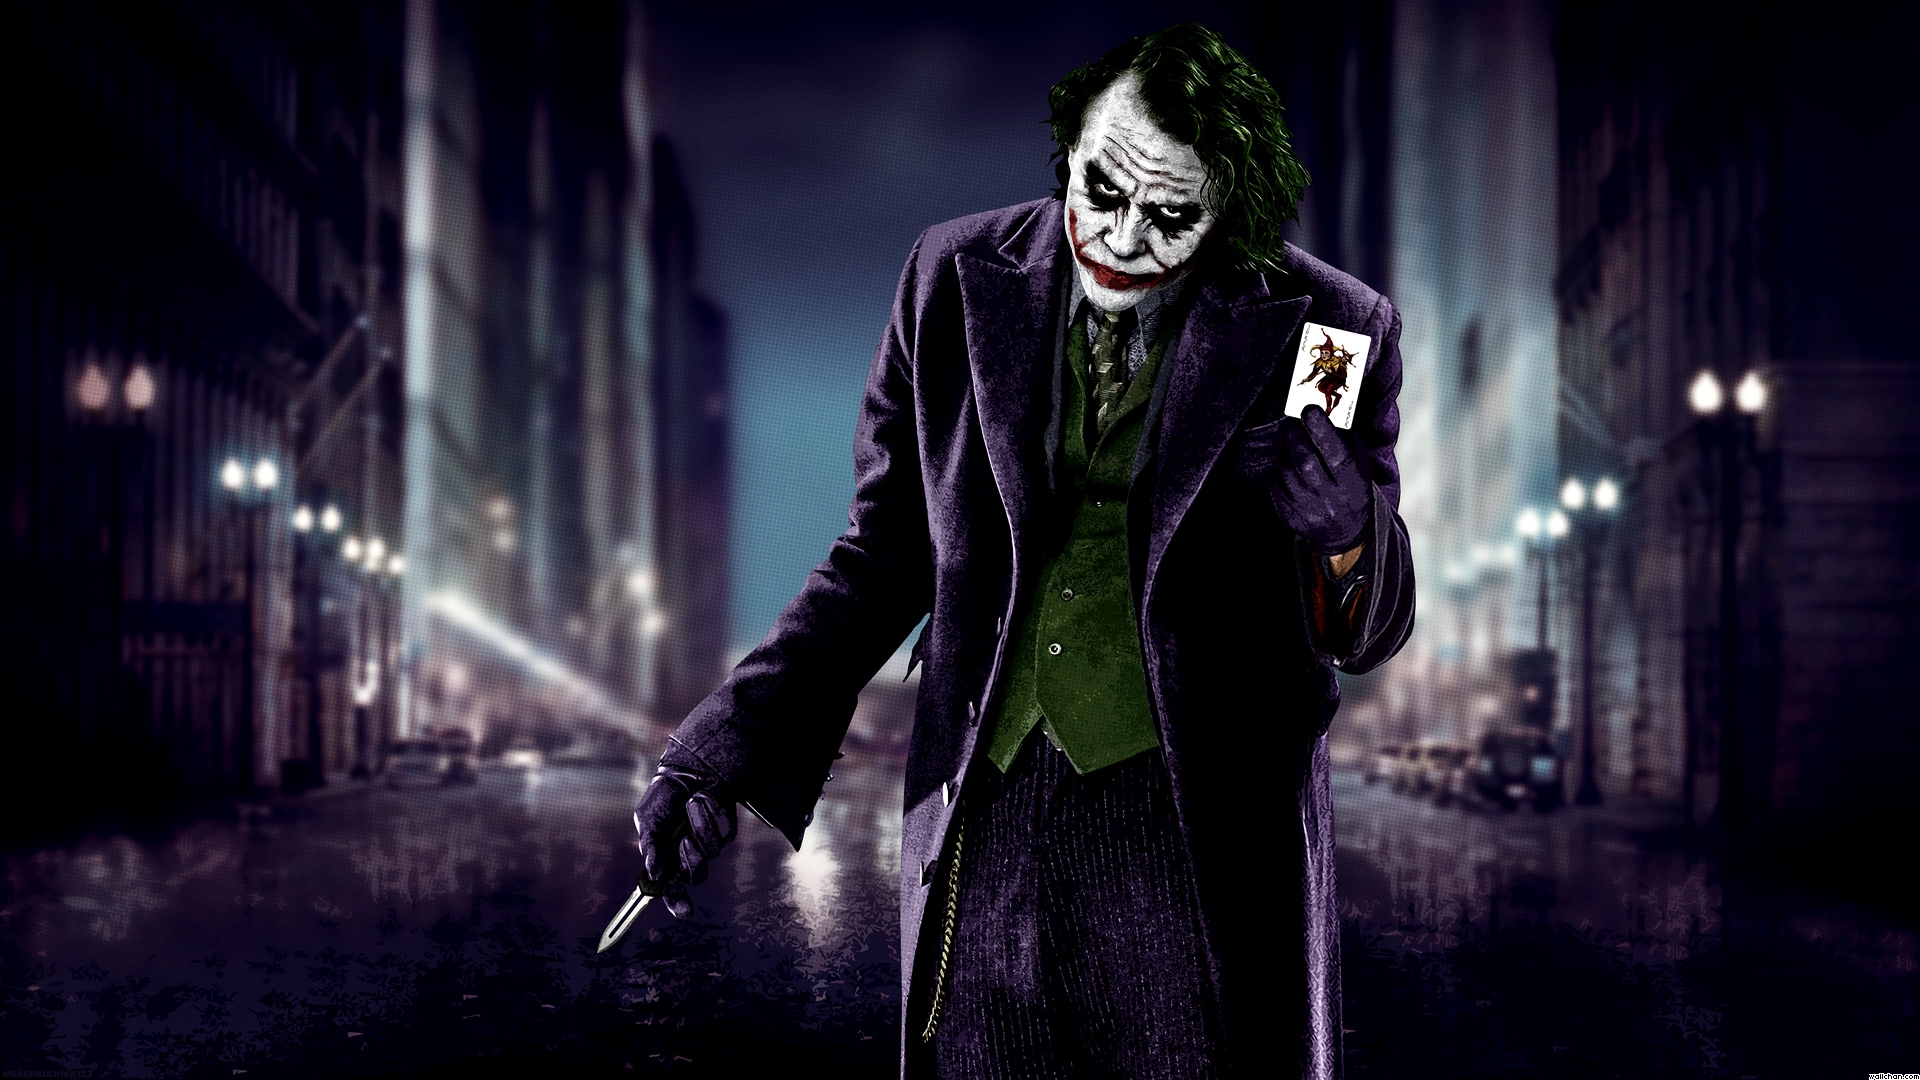 Batman And Jojer Joker City Wallpaper